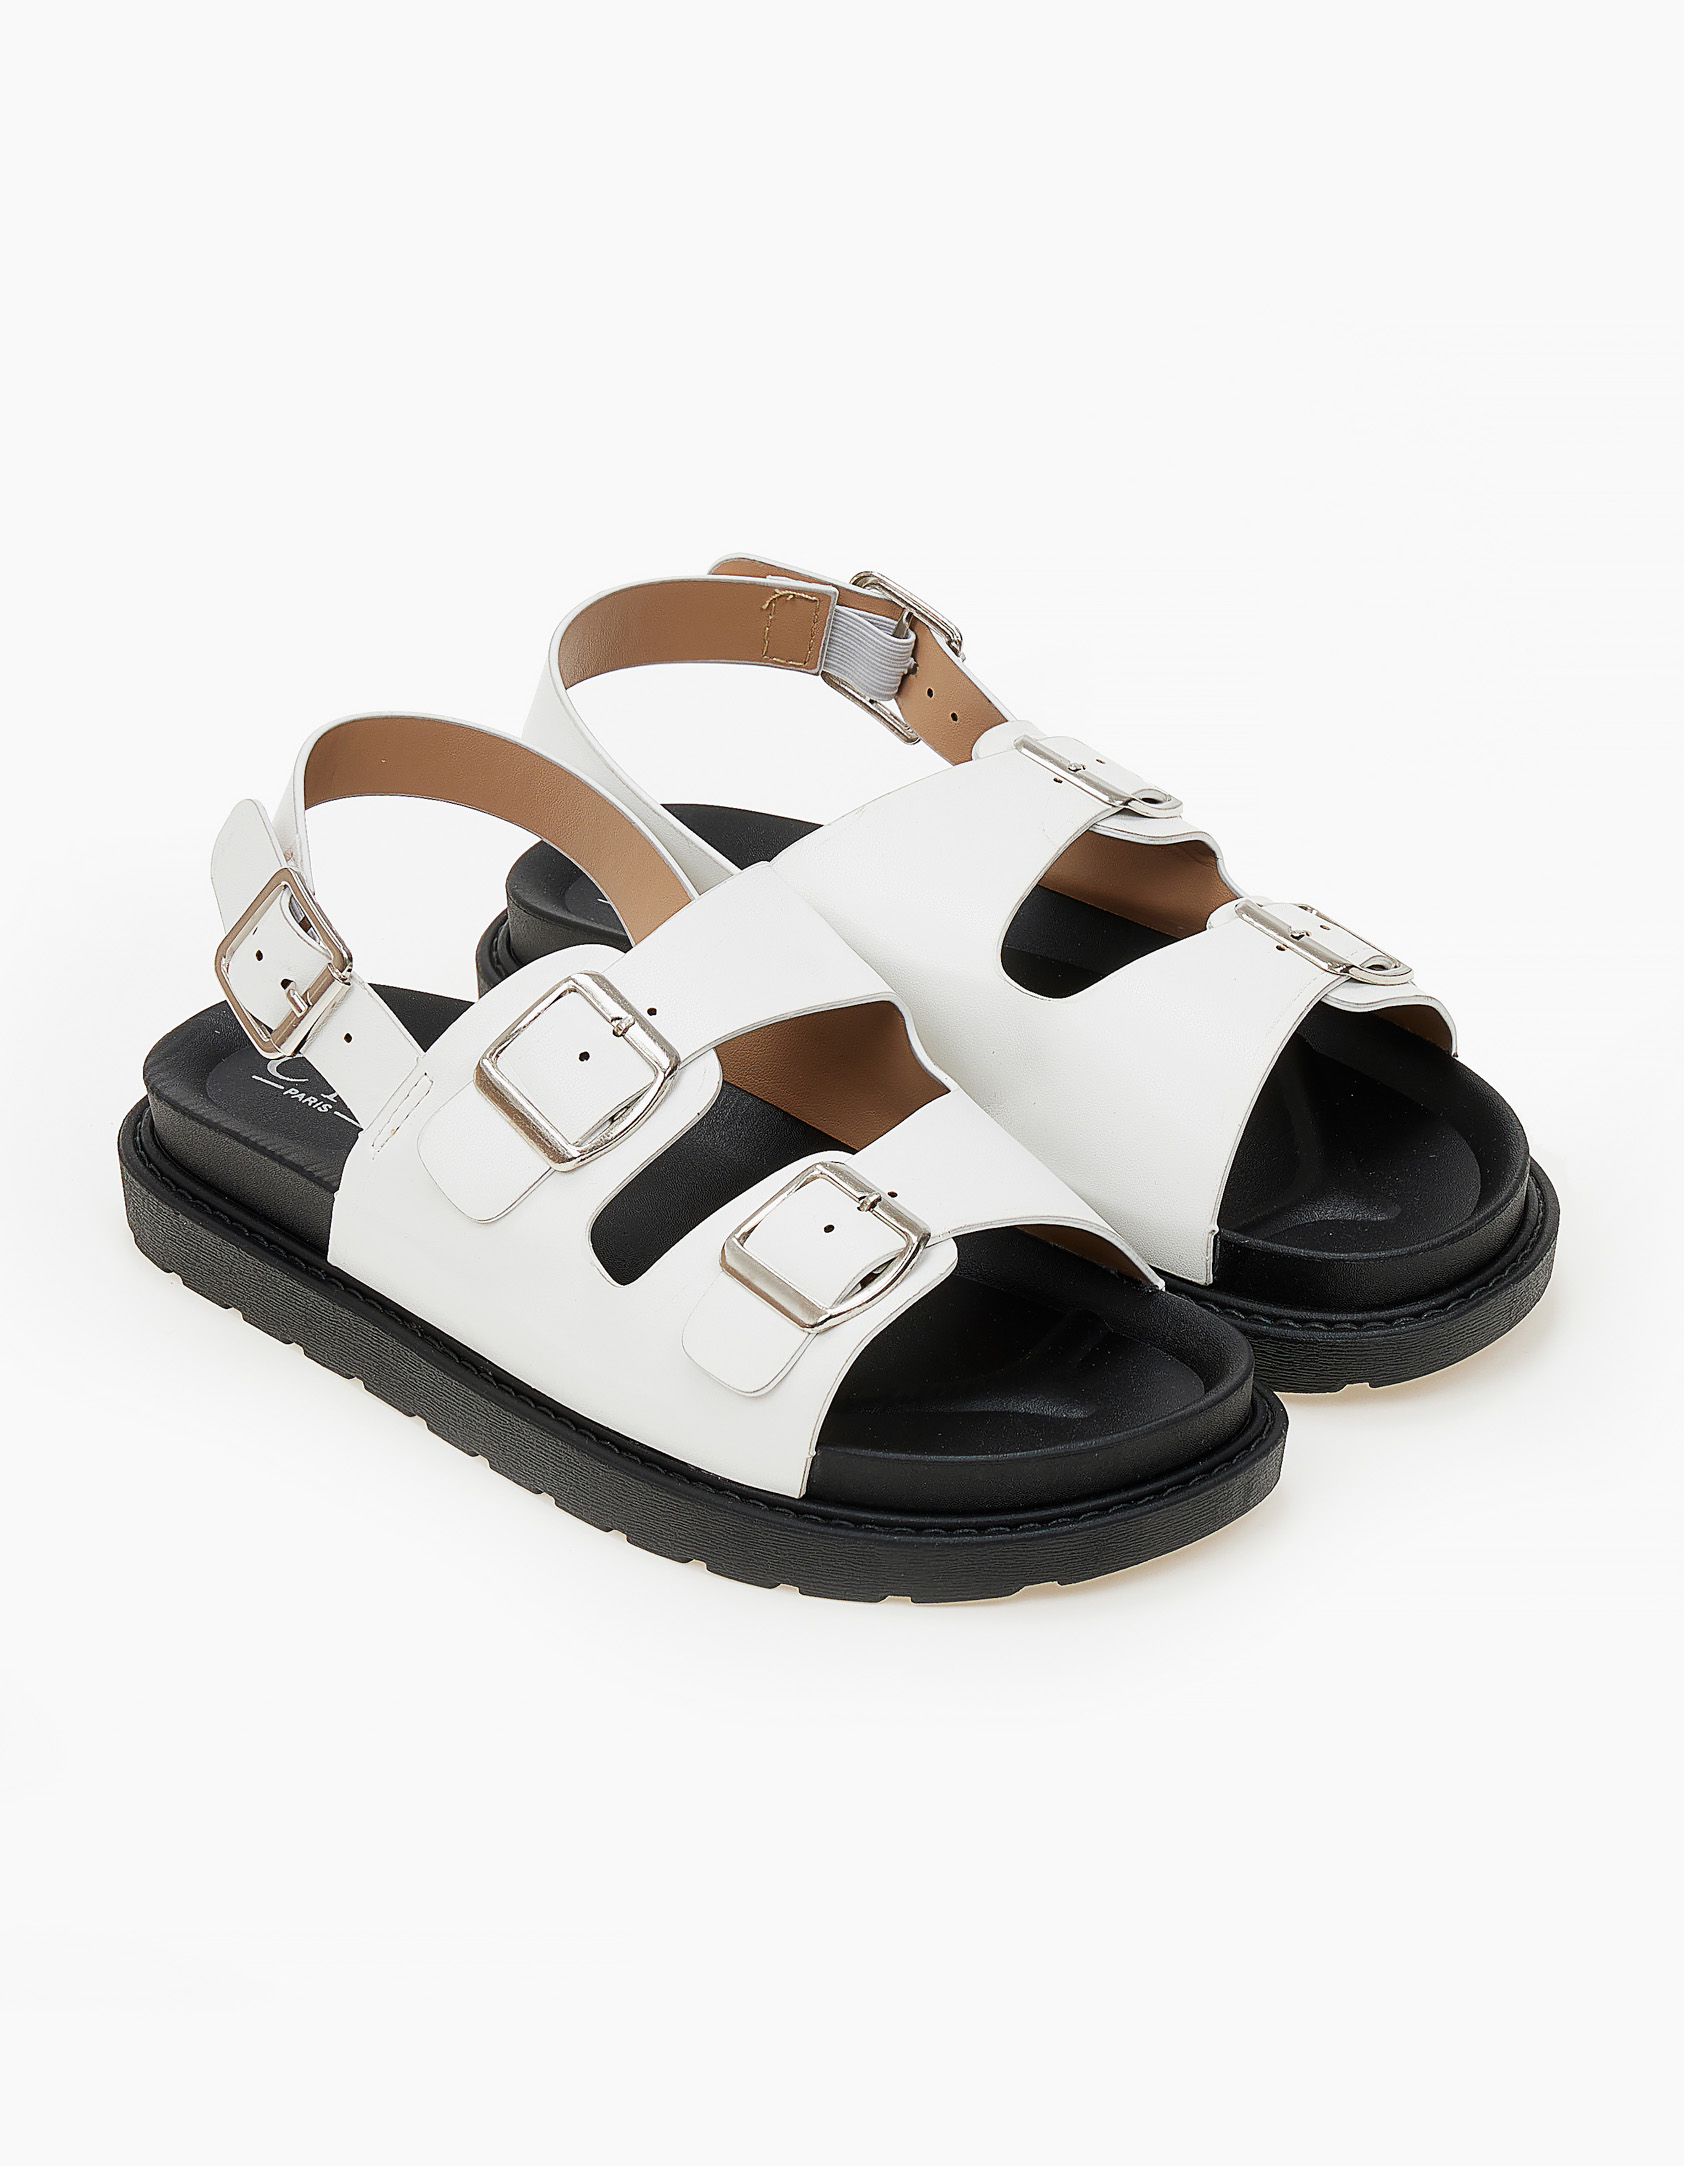 Σανδάλια flatforms με ζωνάκια - Λευκό Παπούτσια > Σανδάλια